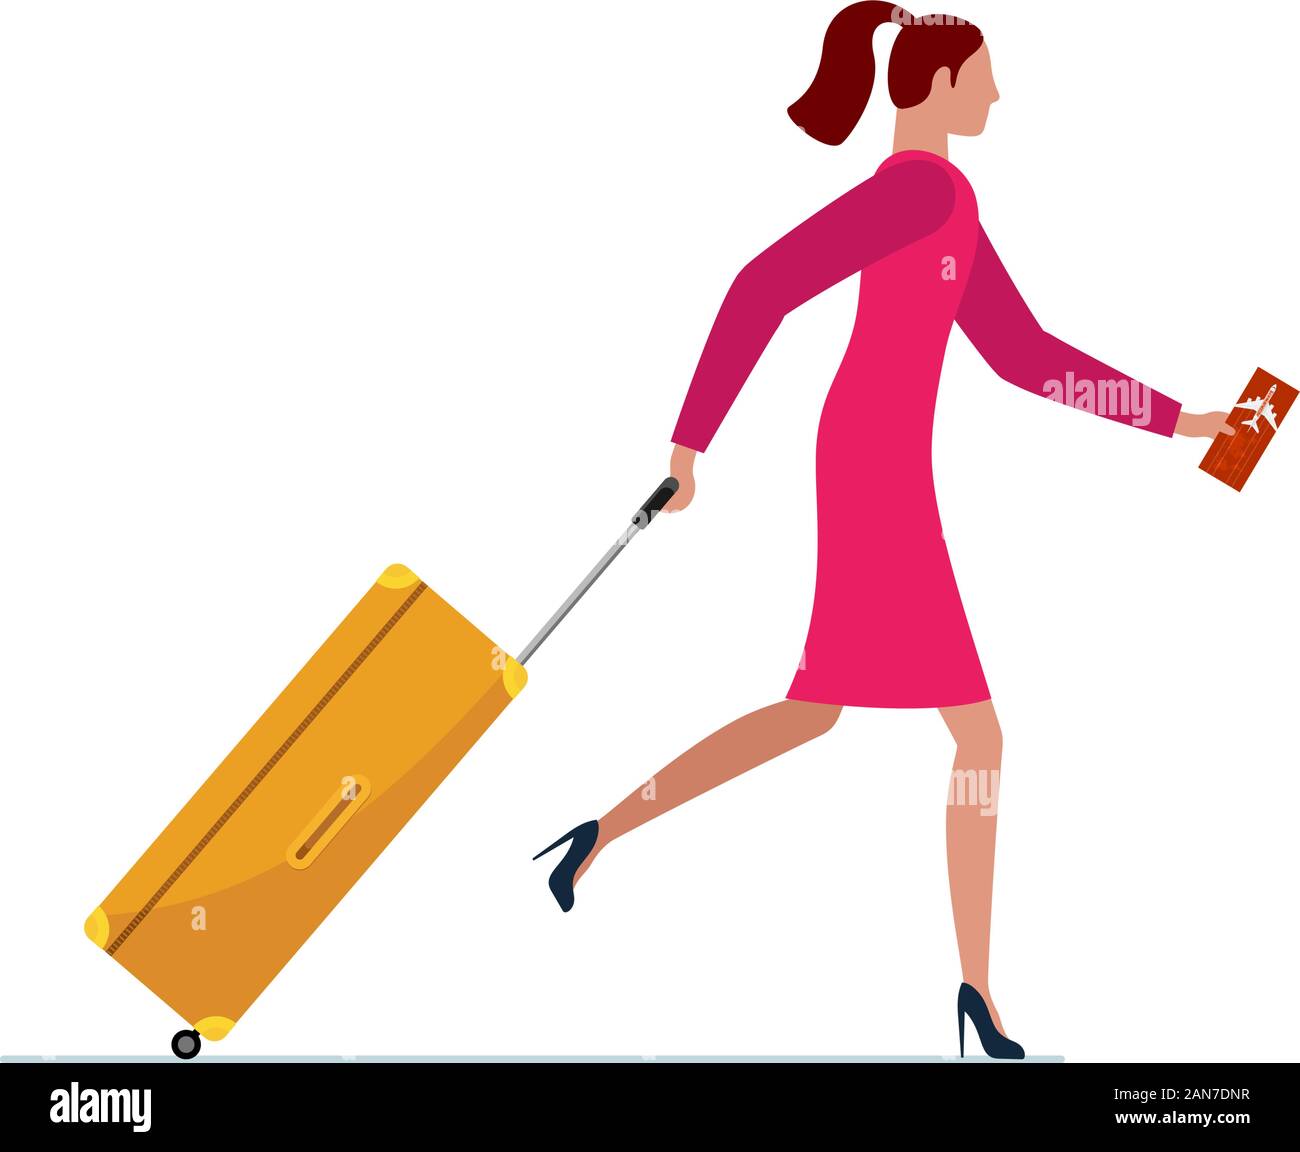 Giovane donna che corre con valigia e biglietto di volo. Donna in abito con  bagaglio borsetta che fa scalo in aereo o volo mancante. Illustrazione  vettoriale del concetto di viaggio turistico Immagine